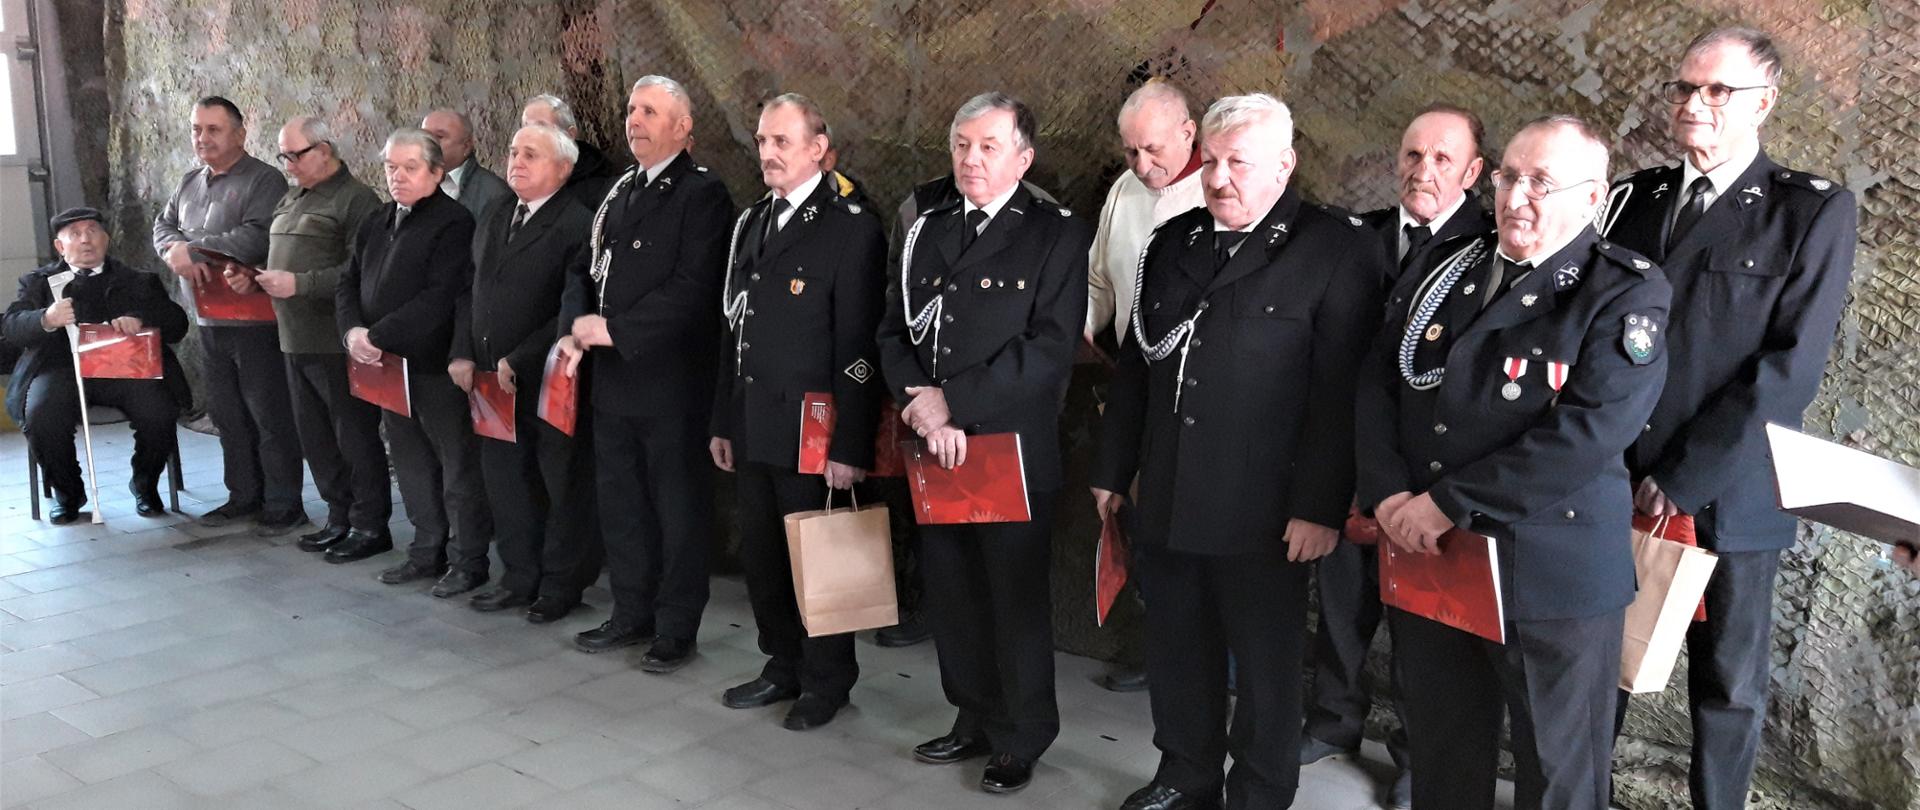 Ustawienie w szeregu strażacy OSP w mundurach wyjściowych